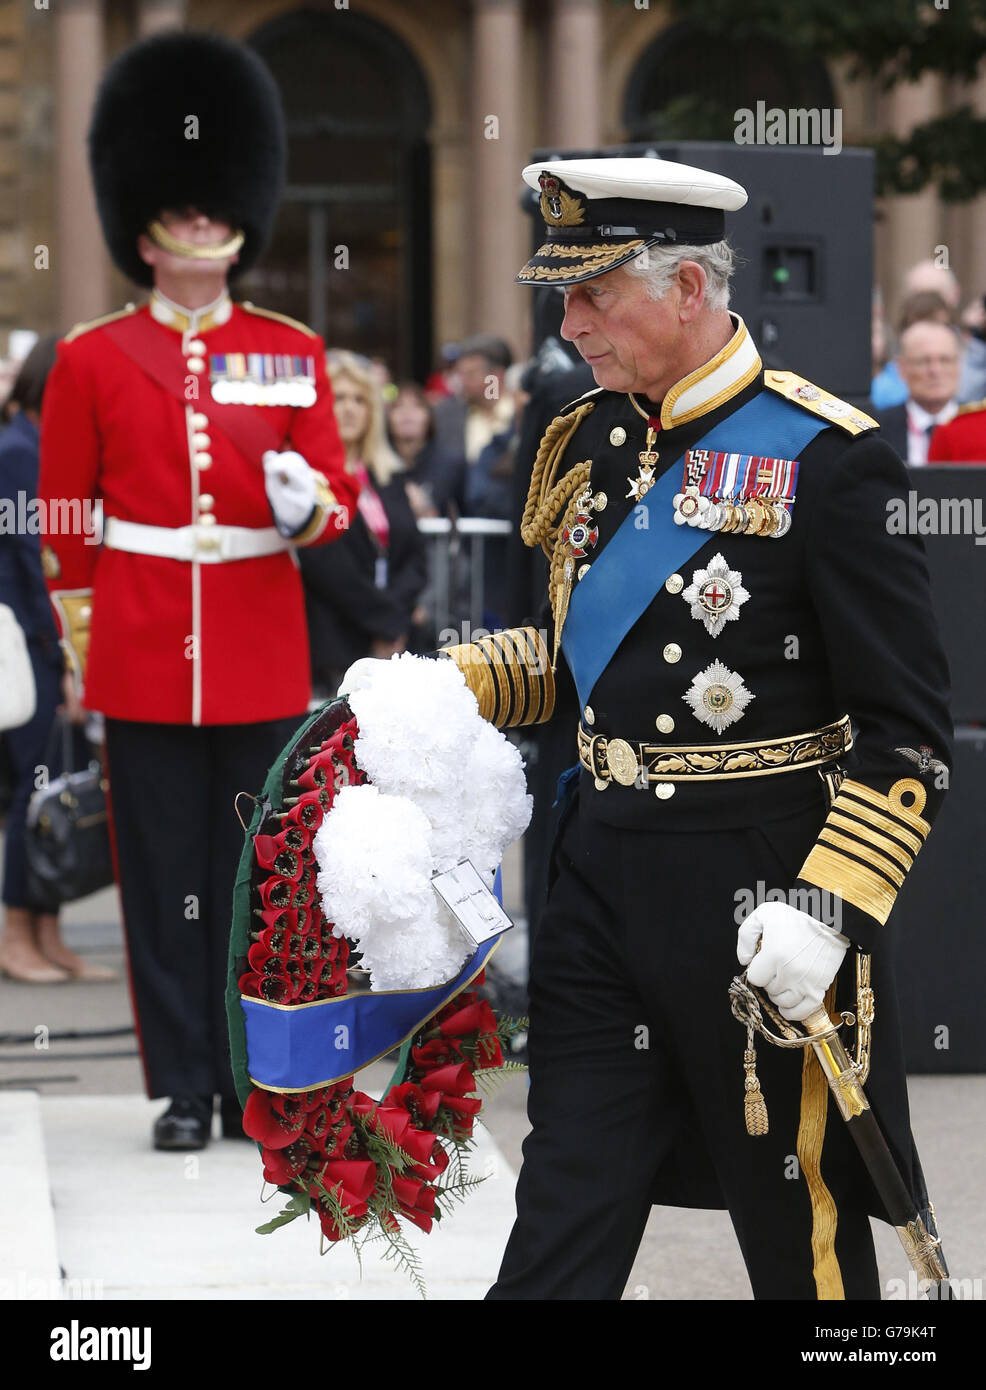 El Príncipe de Gales durante una ceremonia de colocación de coronas en el cenotafio de Glasgow para conmemorar el centenario del inicio de la primera Guerra Mundial. Foto de stock